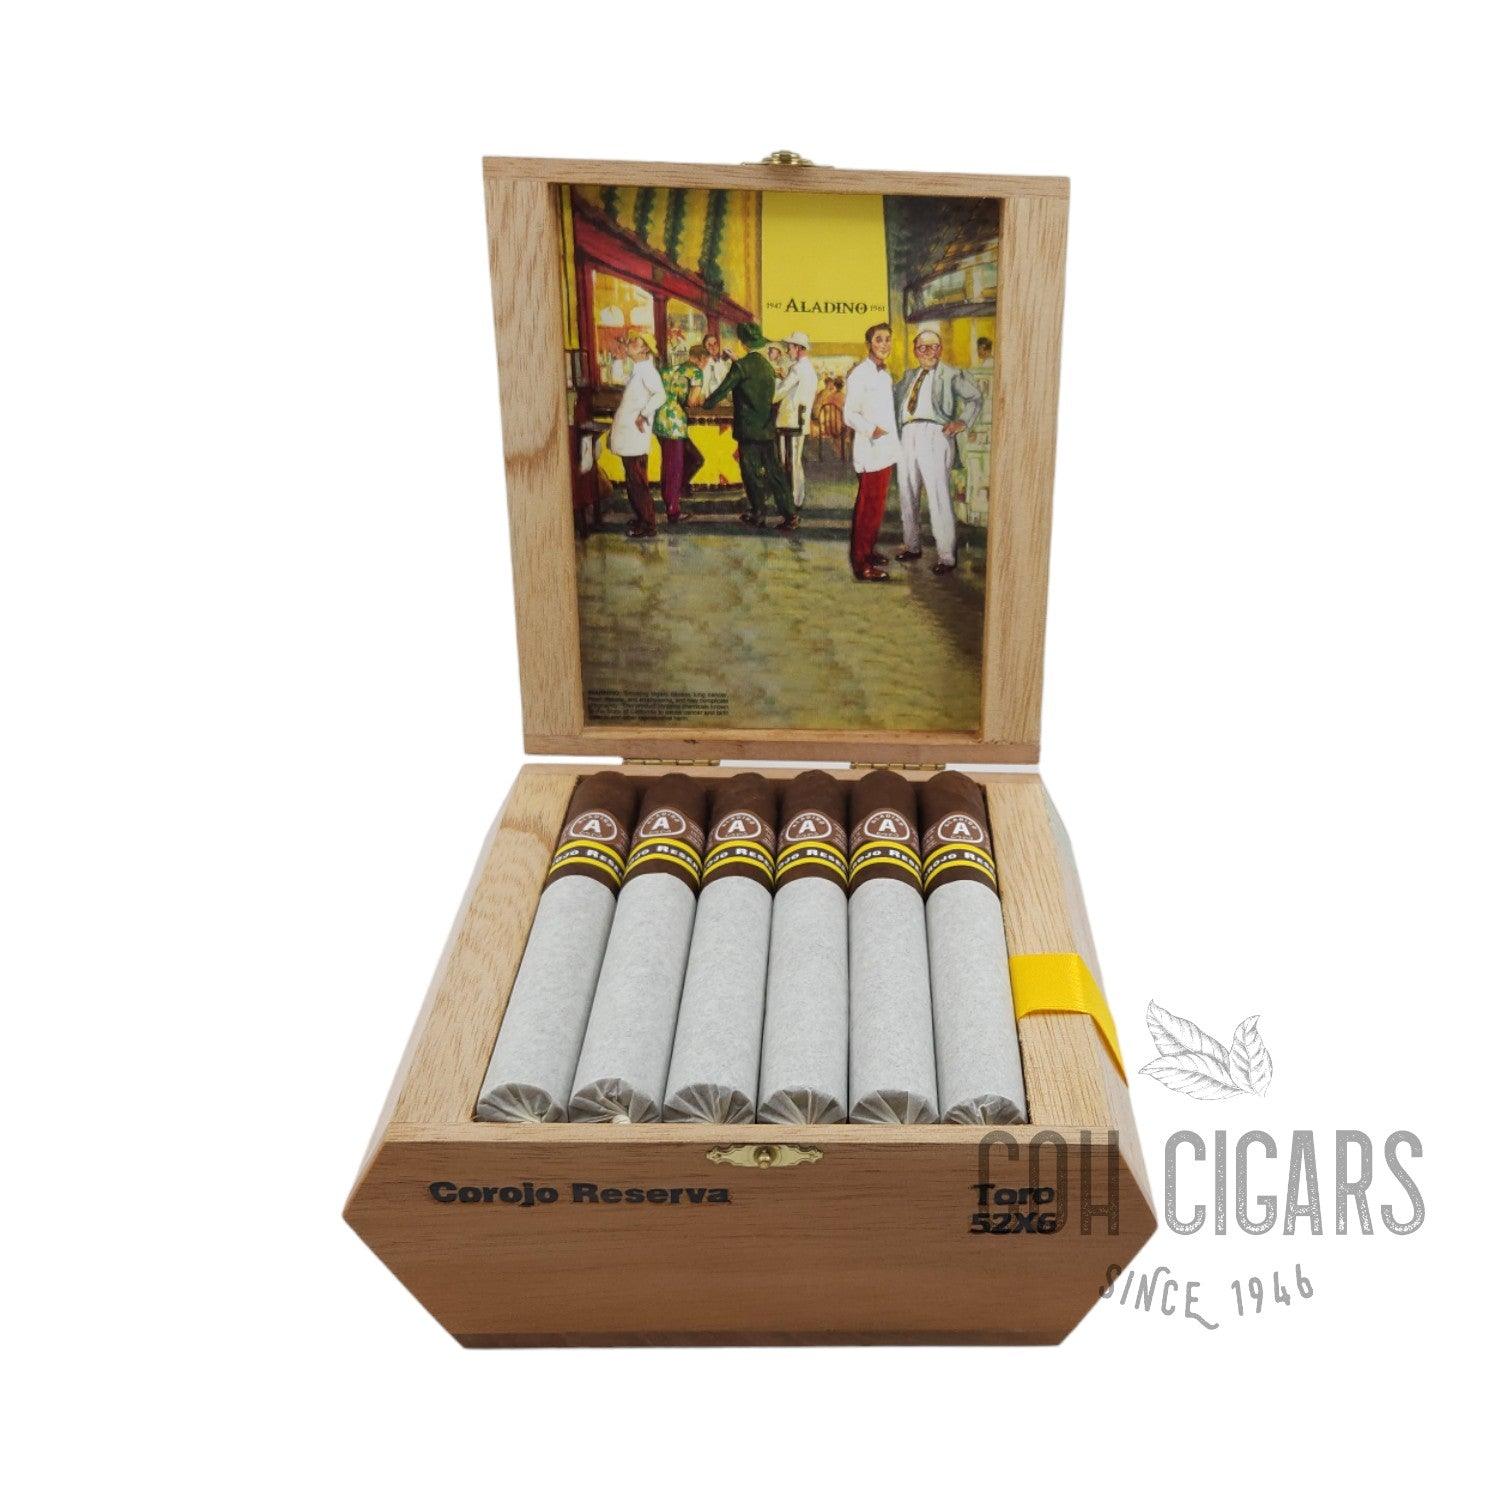 Aladino Cigar | JRE Tobacco Farm Corojo Reserva Toro | Box 20 - hk.cohcigars